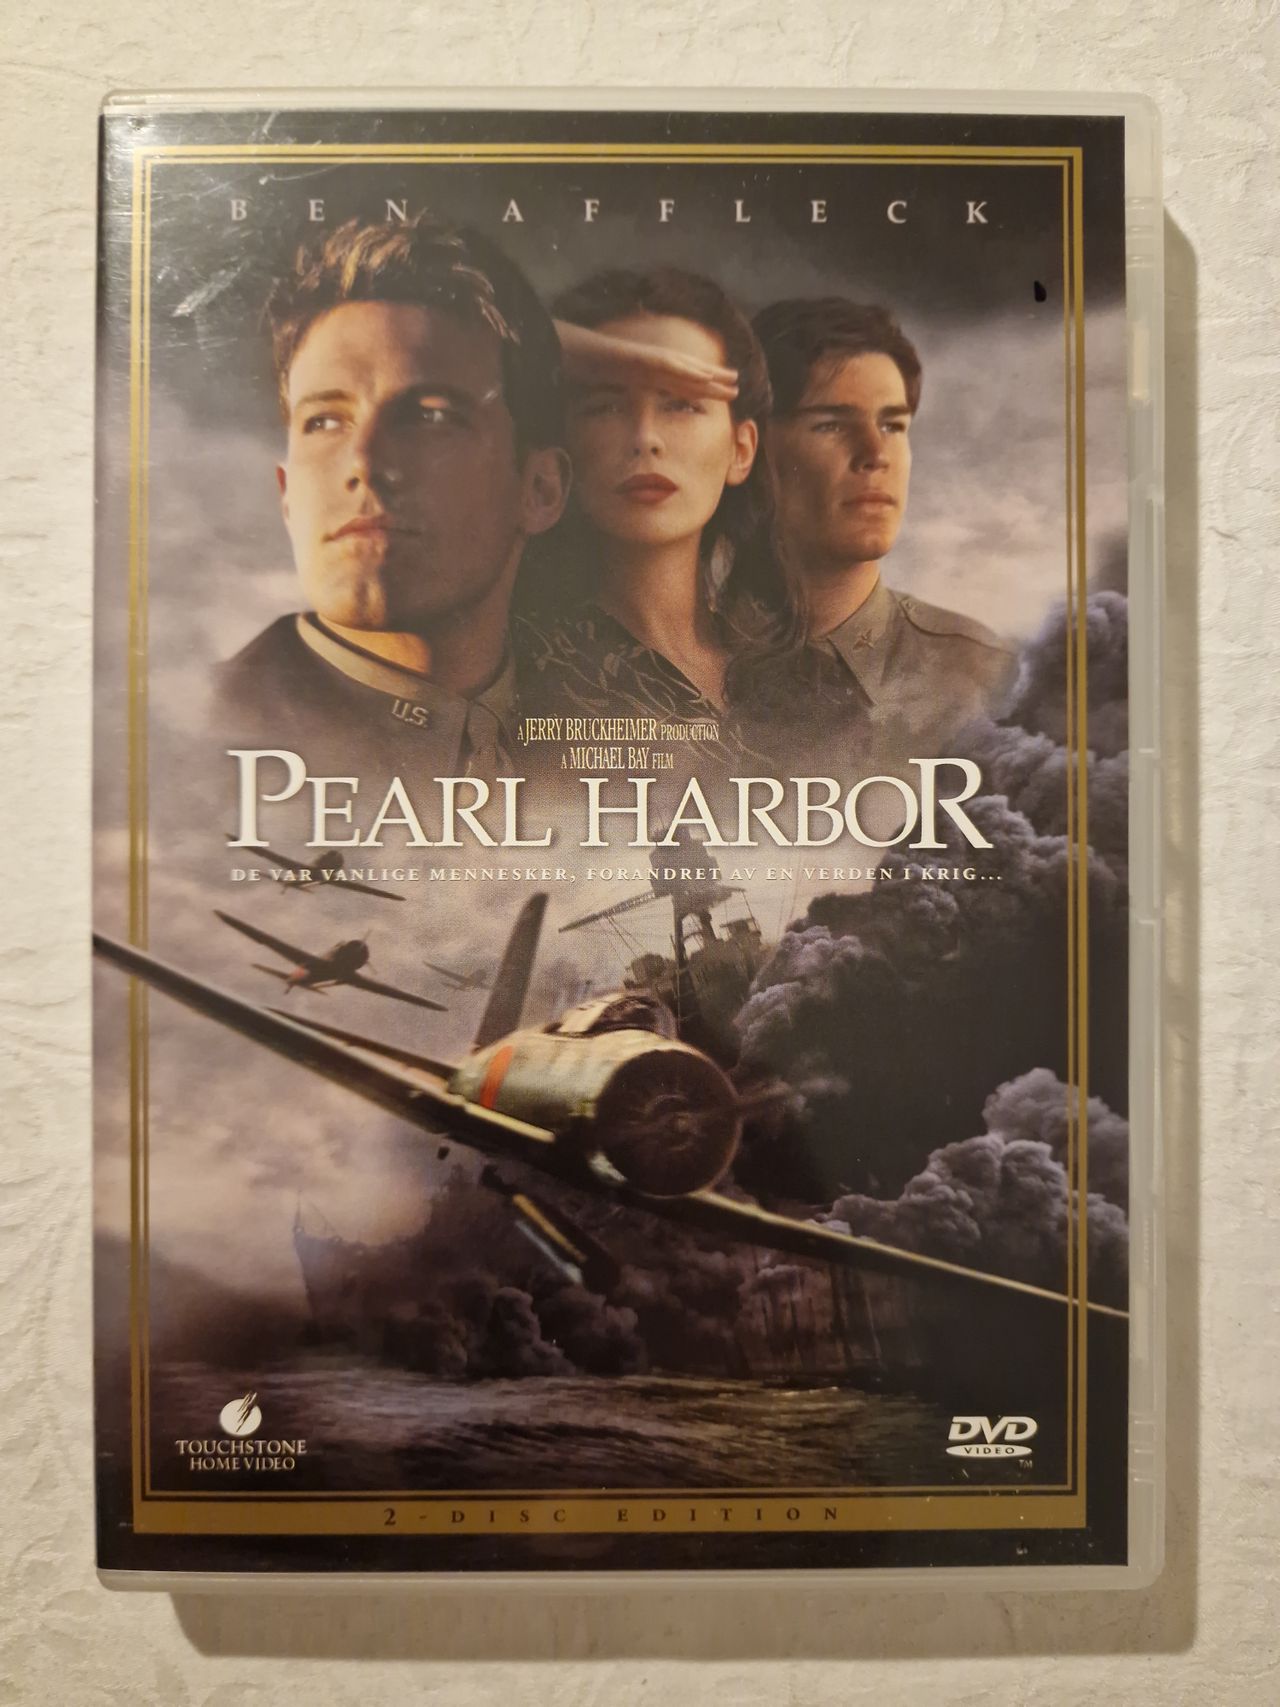 Pearl Harbor 2001 DVD Disc 2 Menu Walktrough in HQ 